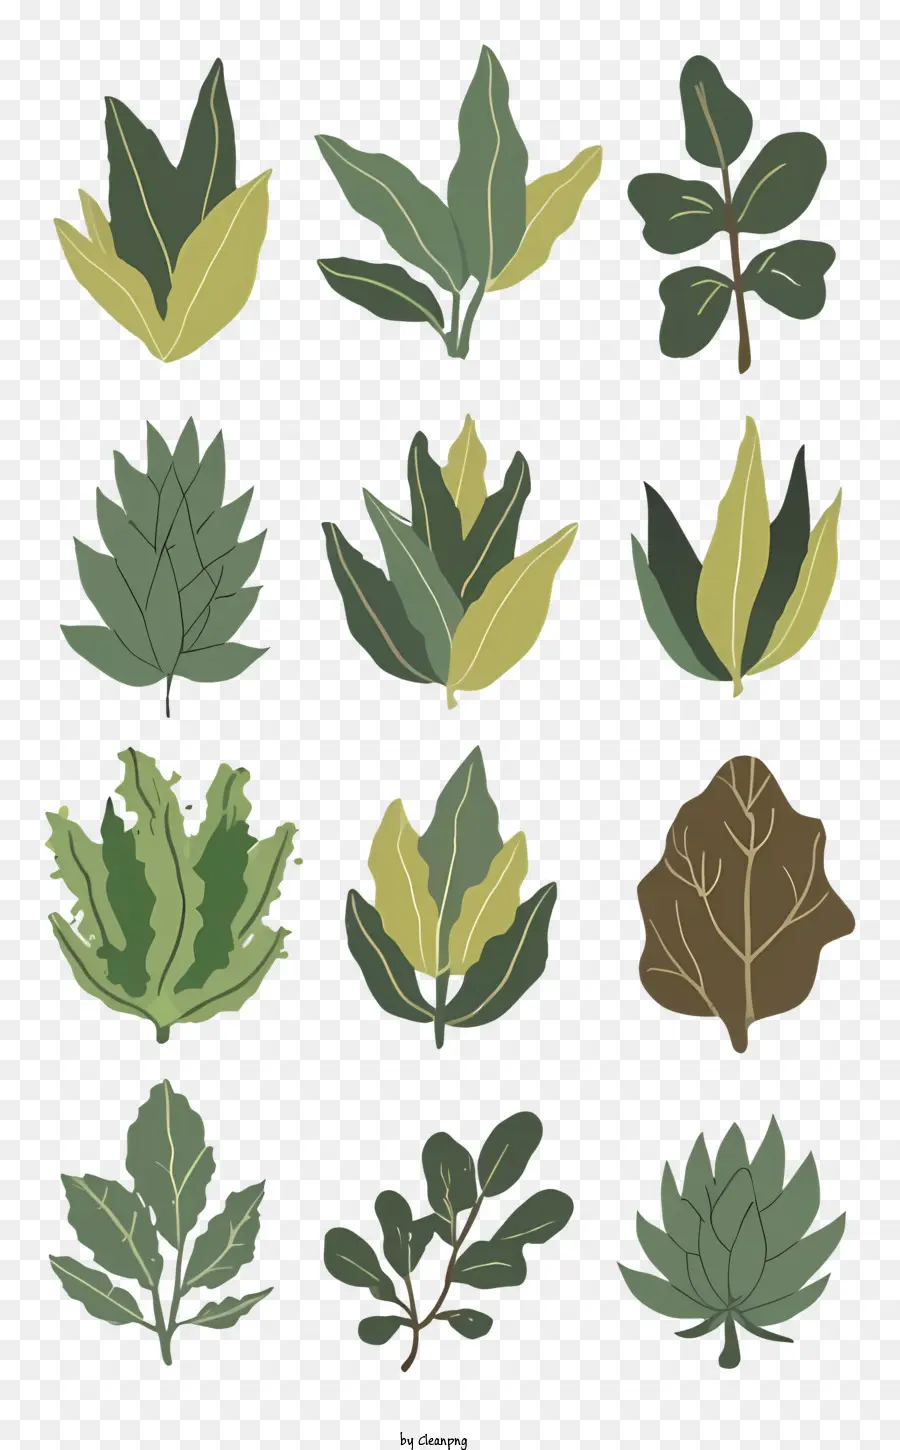 foglie tipi di foglie forme foglie Colori foglie foglie stilizzate - Vari tipi di foglie raffigurati in modi stilizzati e diversi